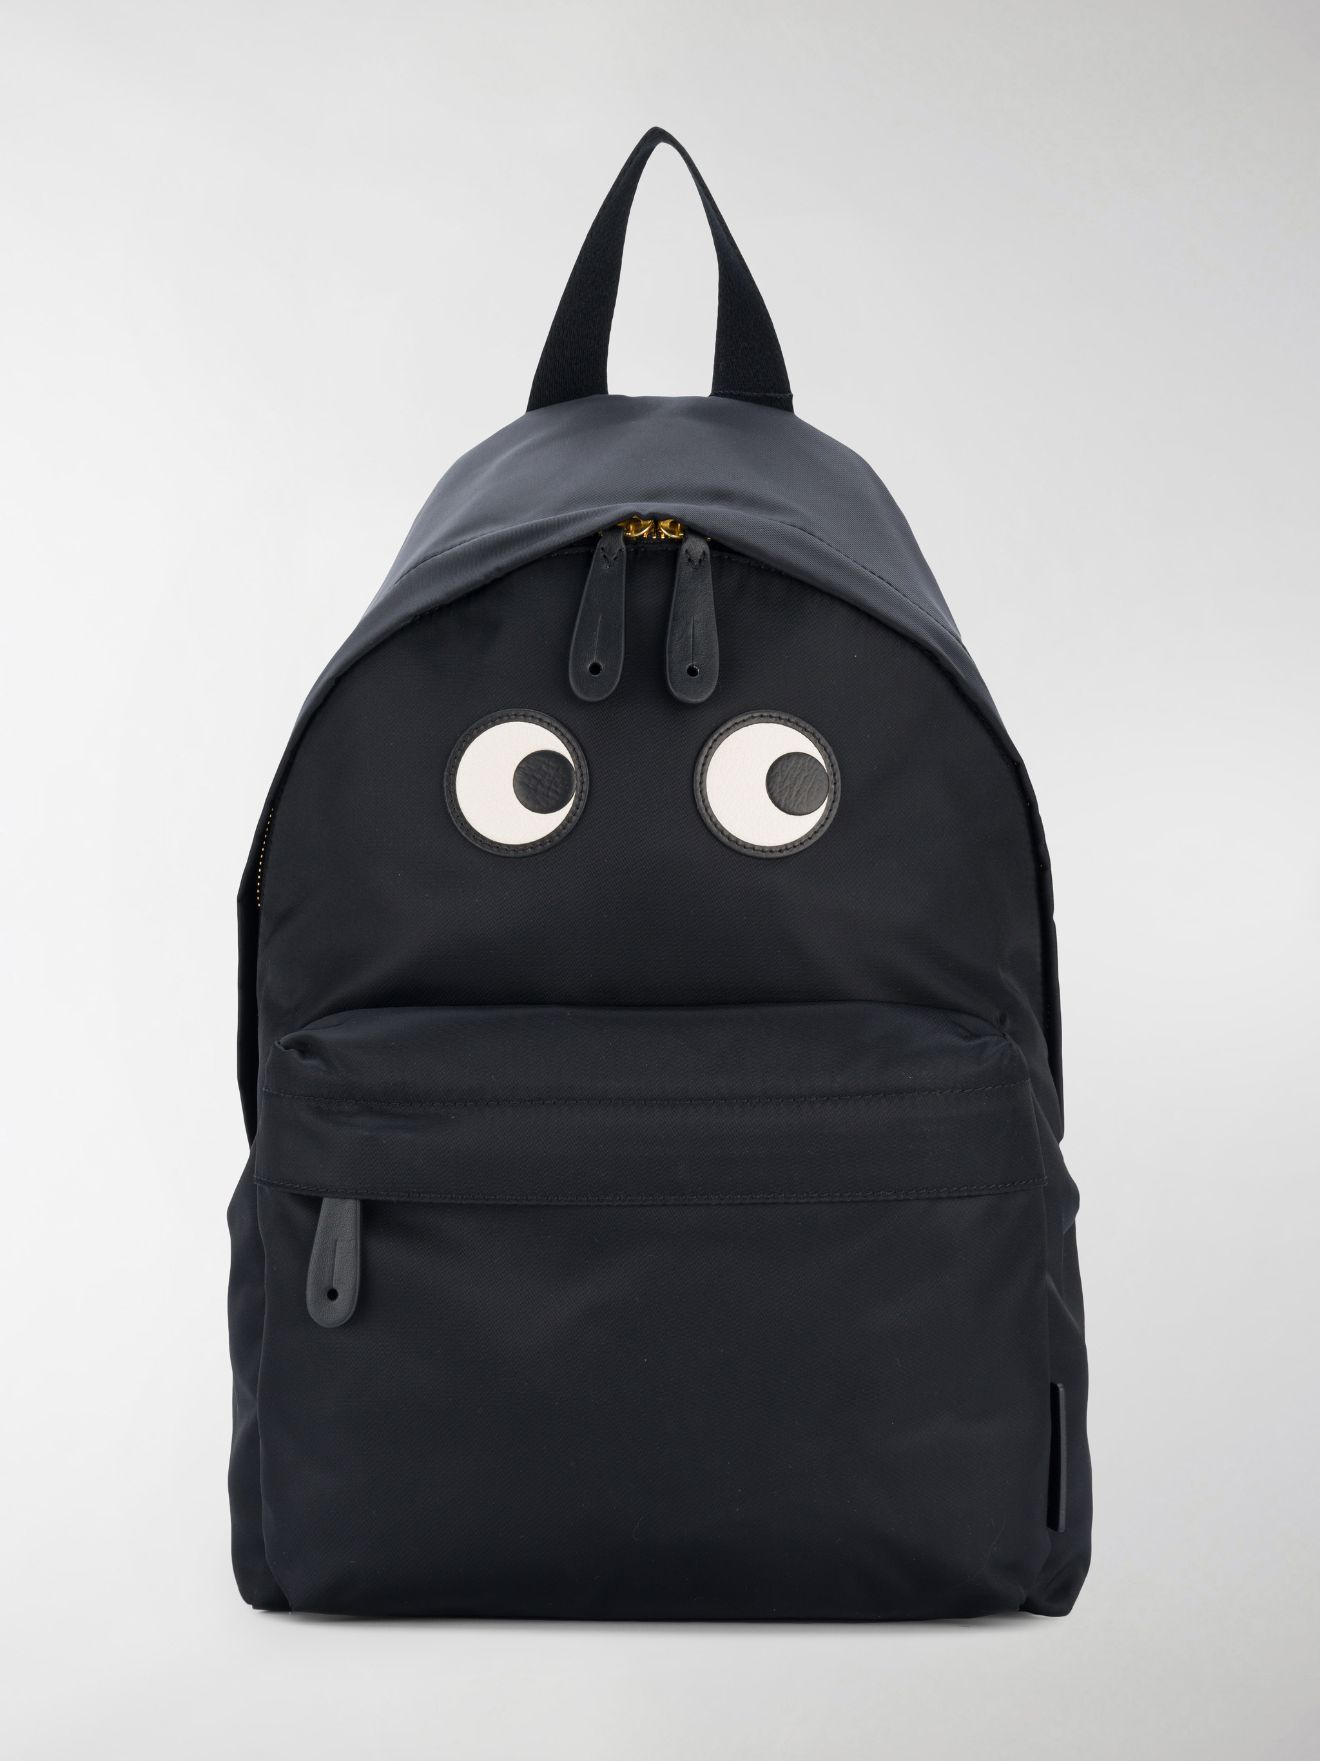 Anya Hindmarch eye print backpack black | MODES